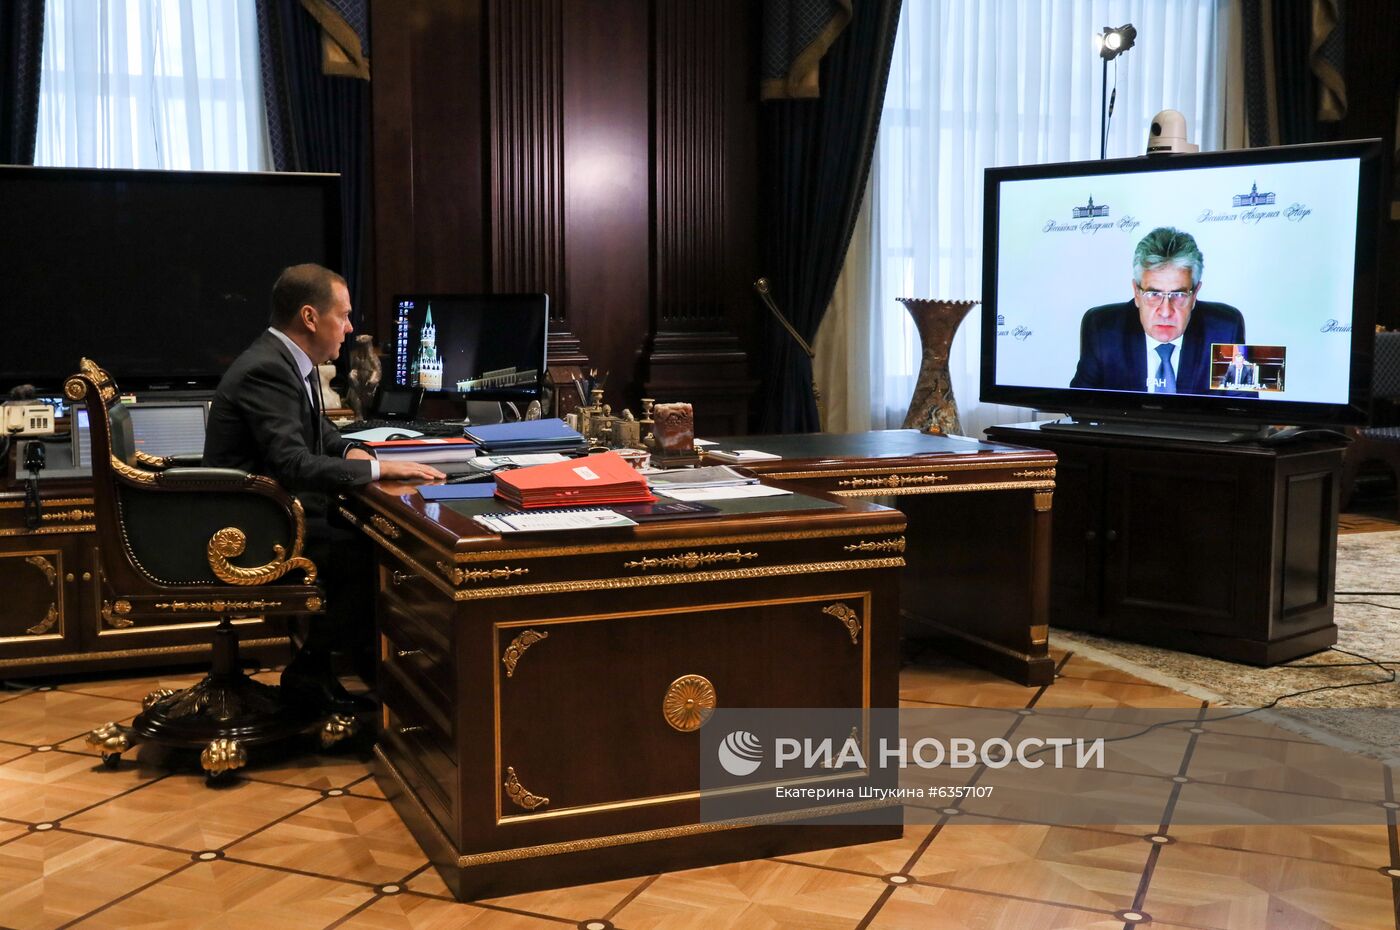 Заместитель председателя Совета безопасности РФ Д. Медведев встретился с президентом РАН А. Сергеевым